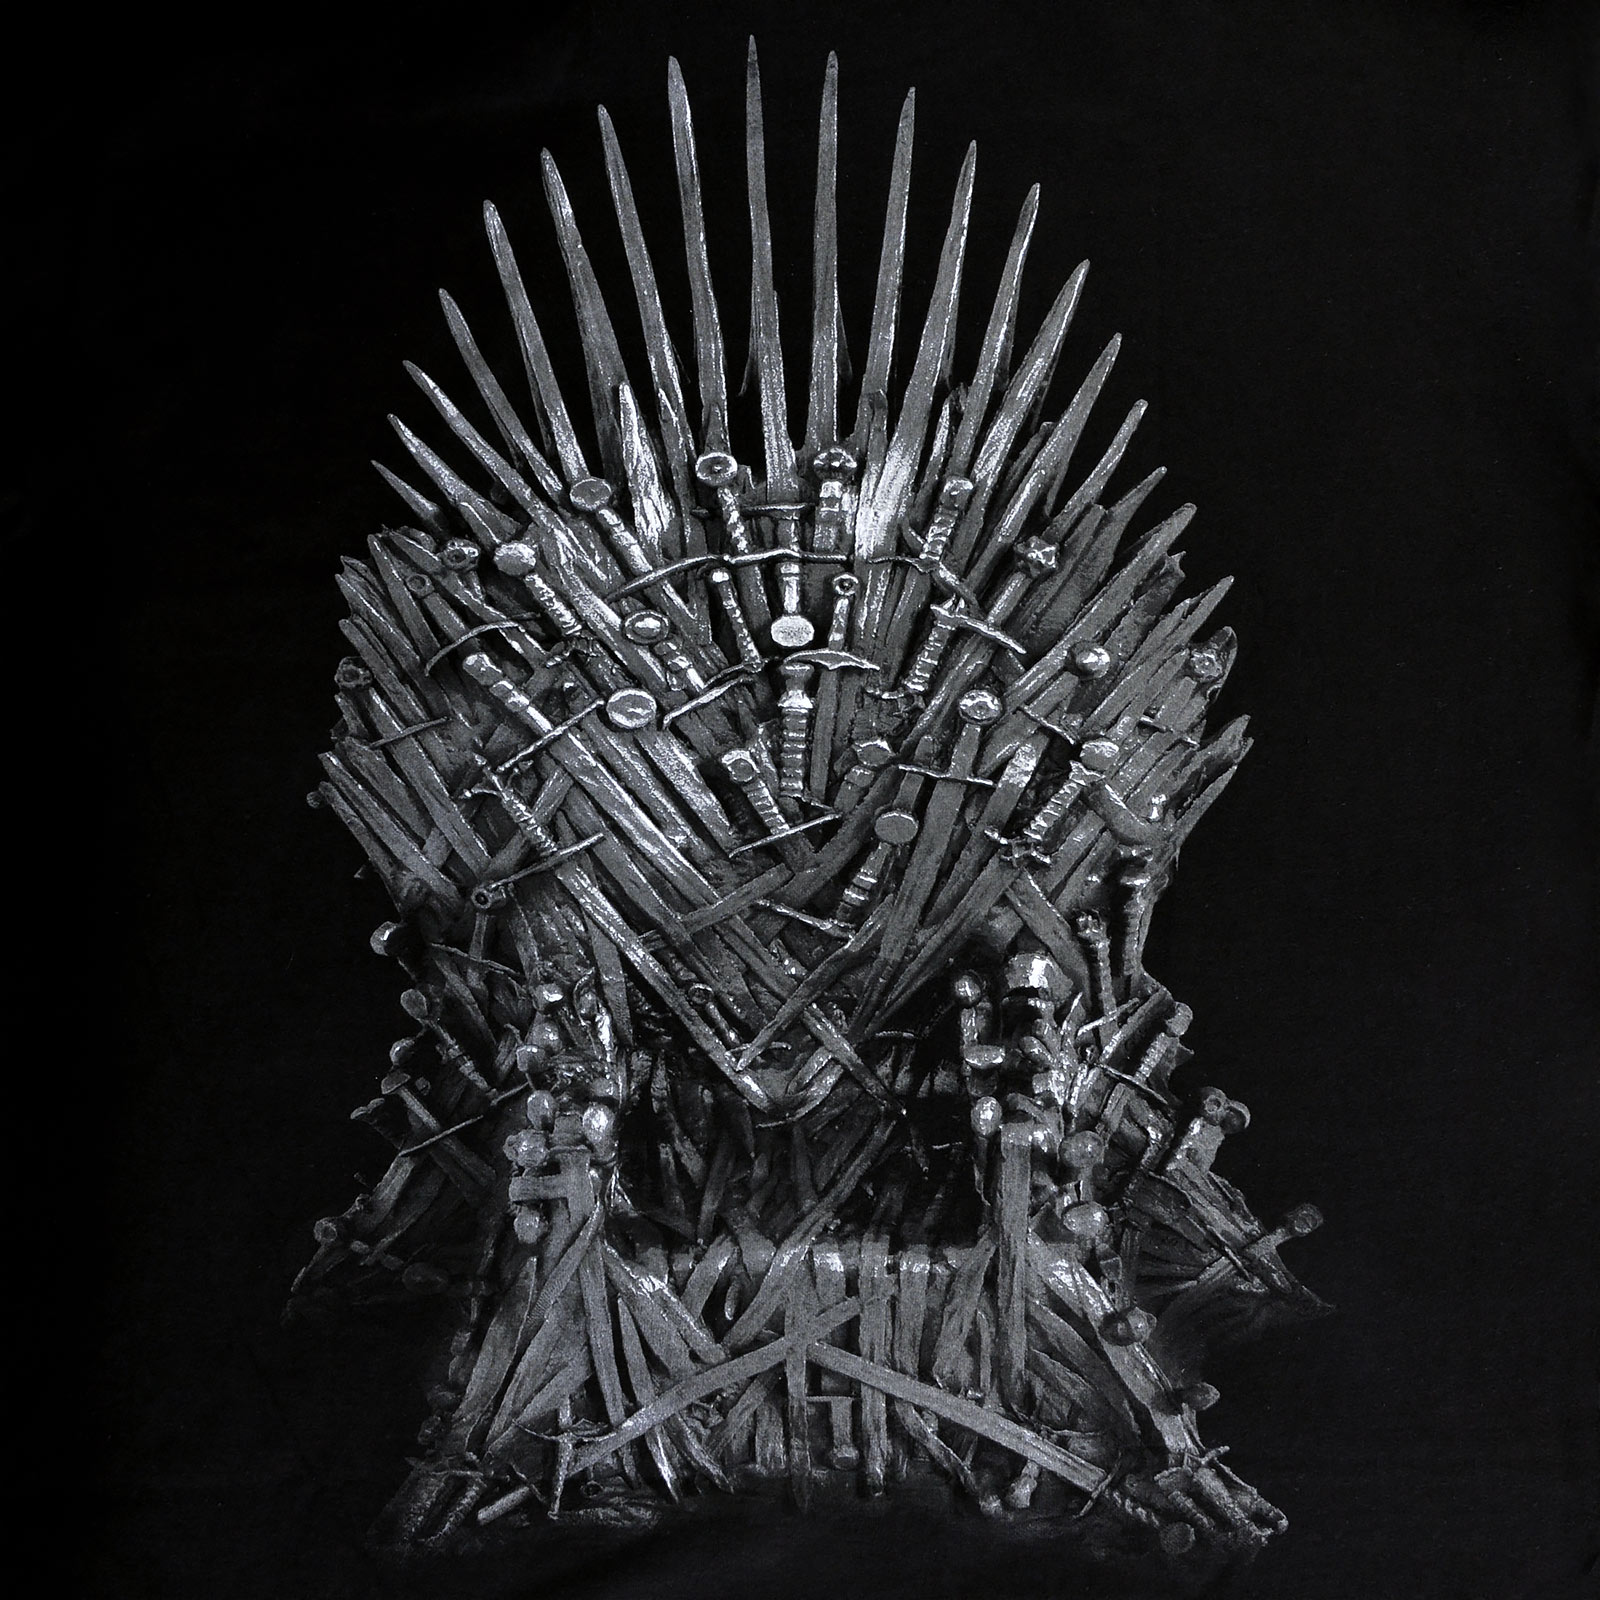 Game of Thrones - Der Eiserne Thron T-Shirt